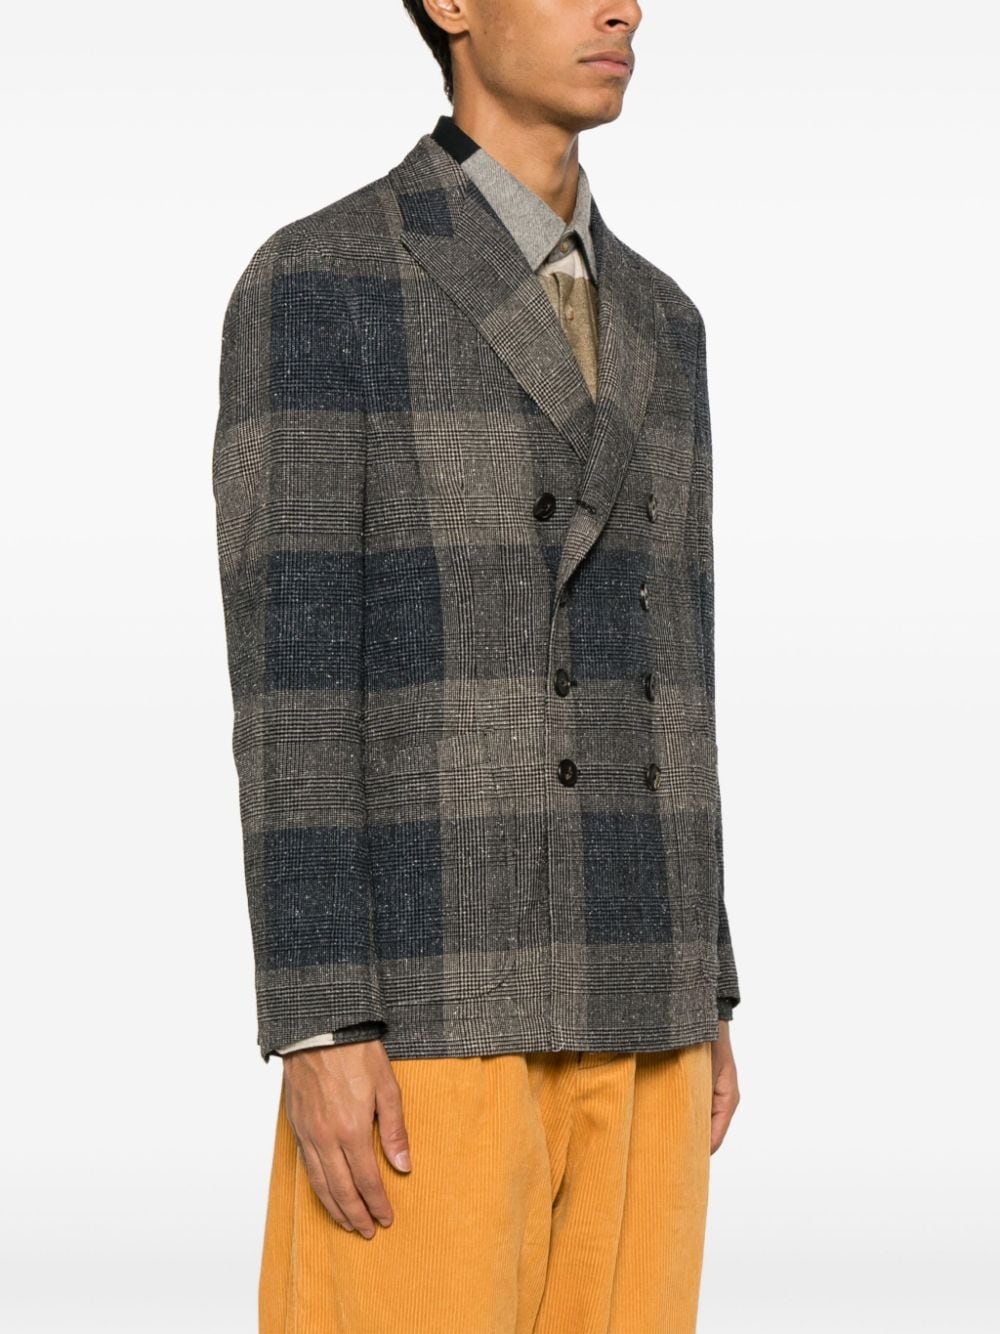 PRINCE-OF-WALES 格双排扣西装夹克